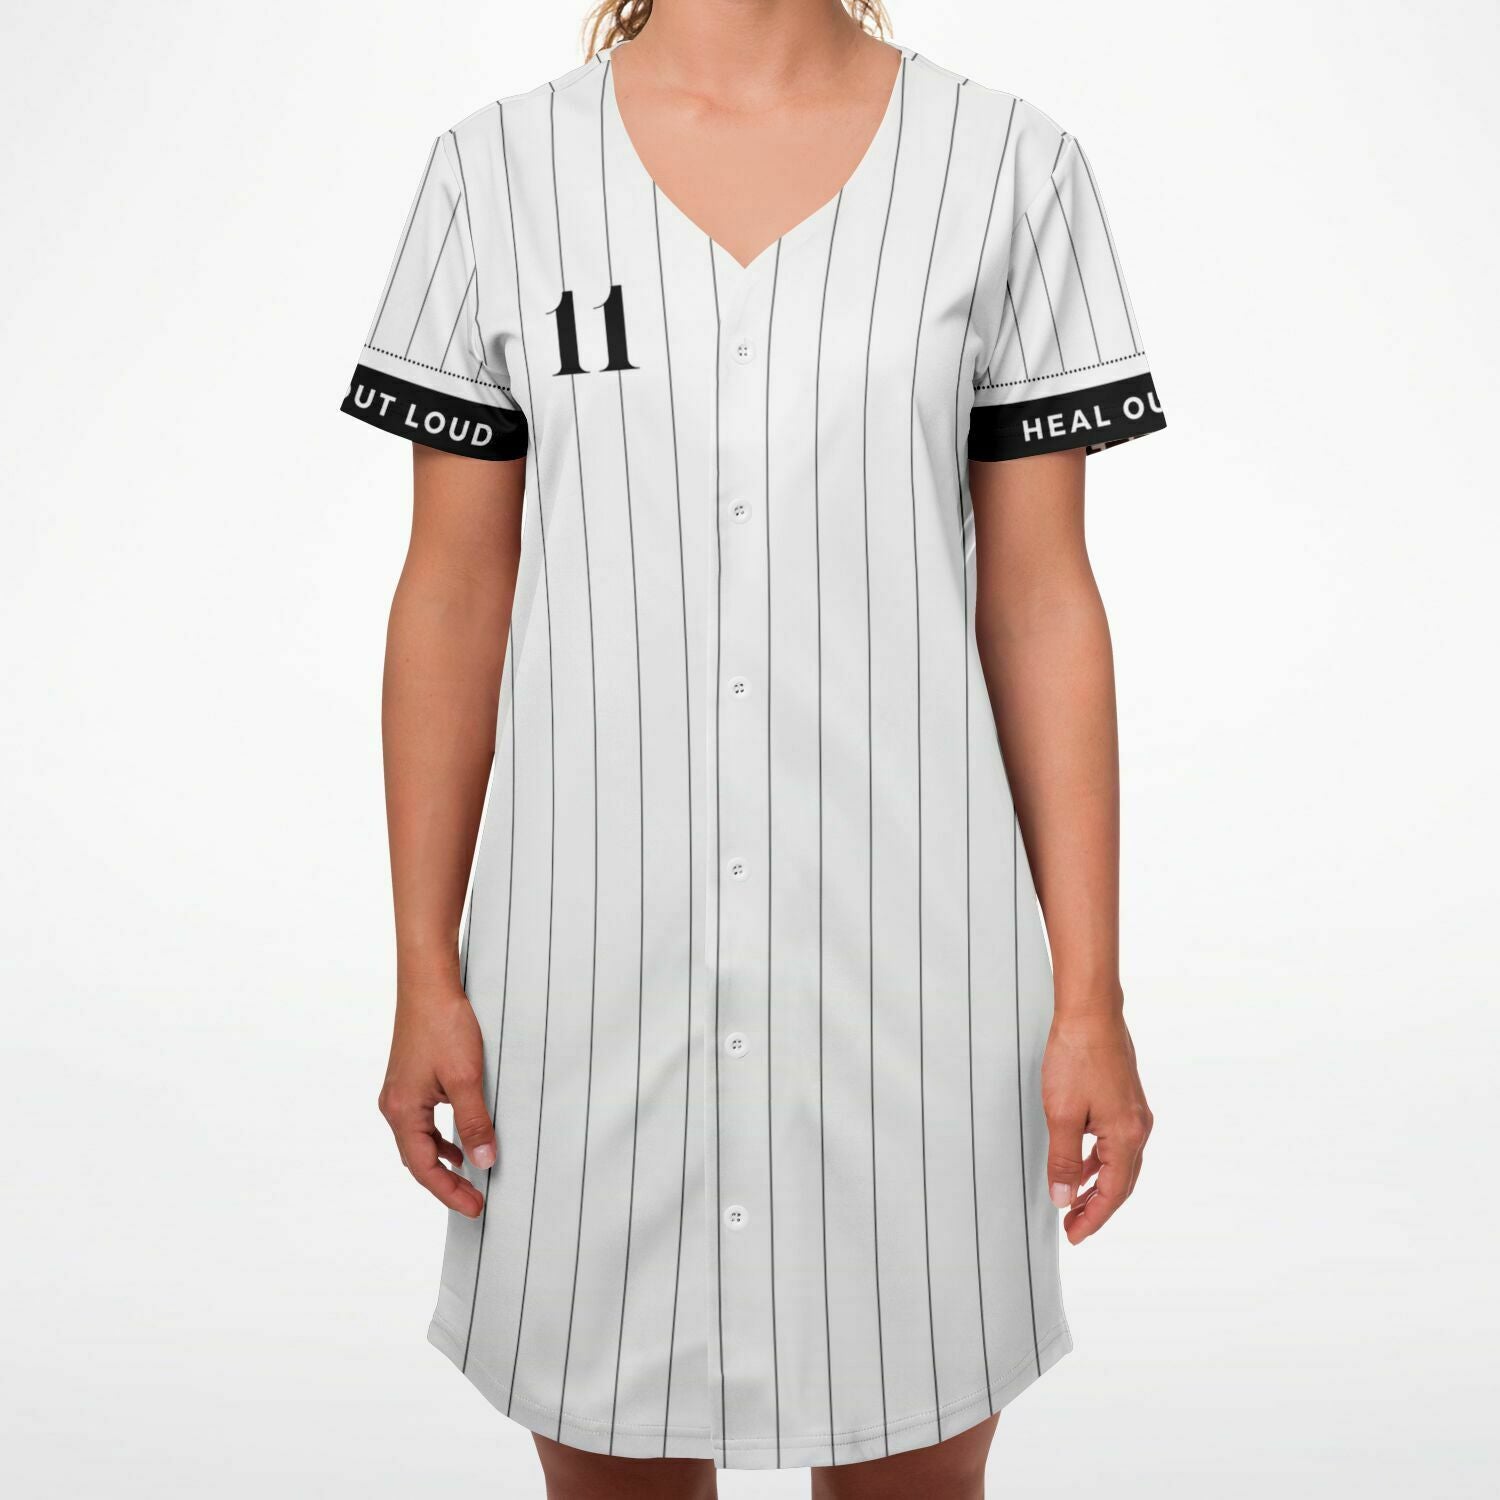 1111 Baseball Jersey Dress